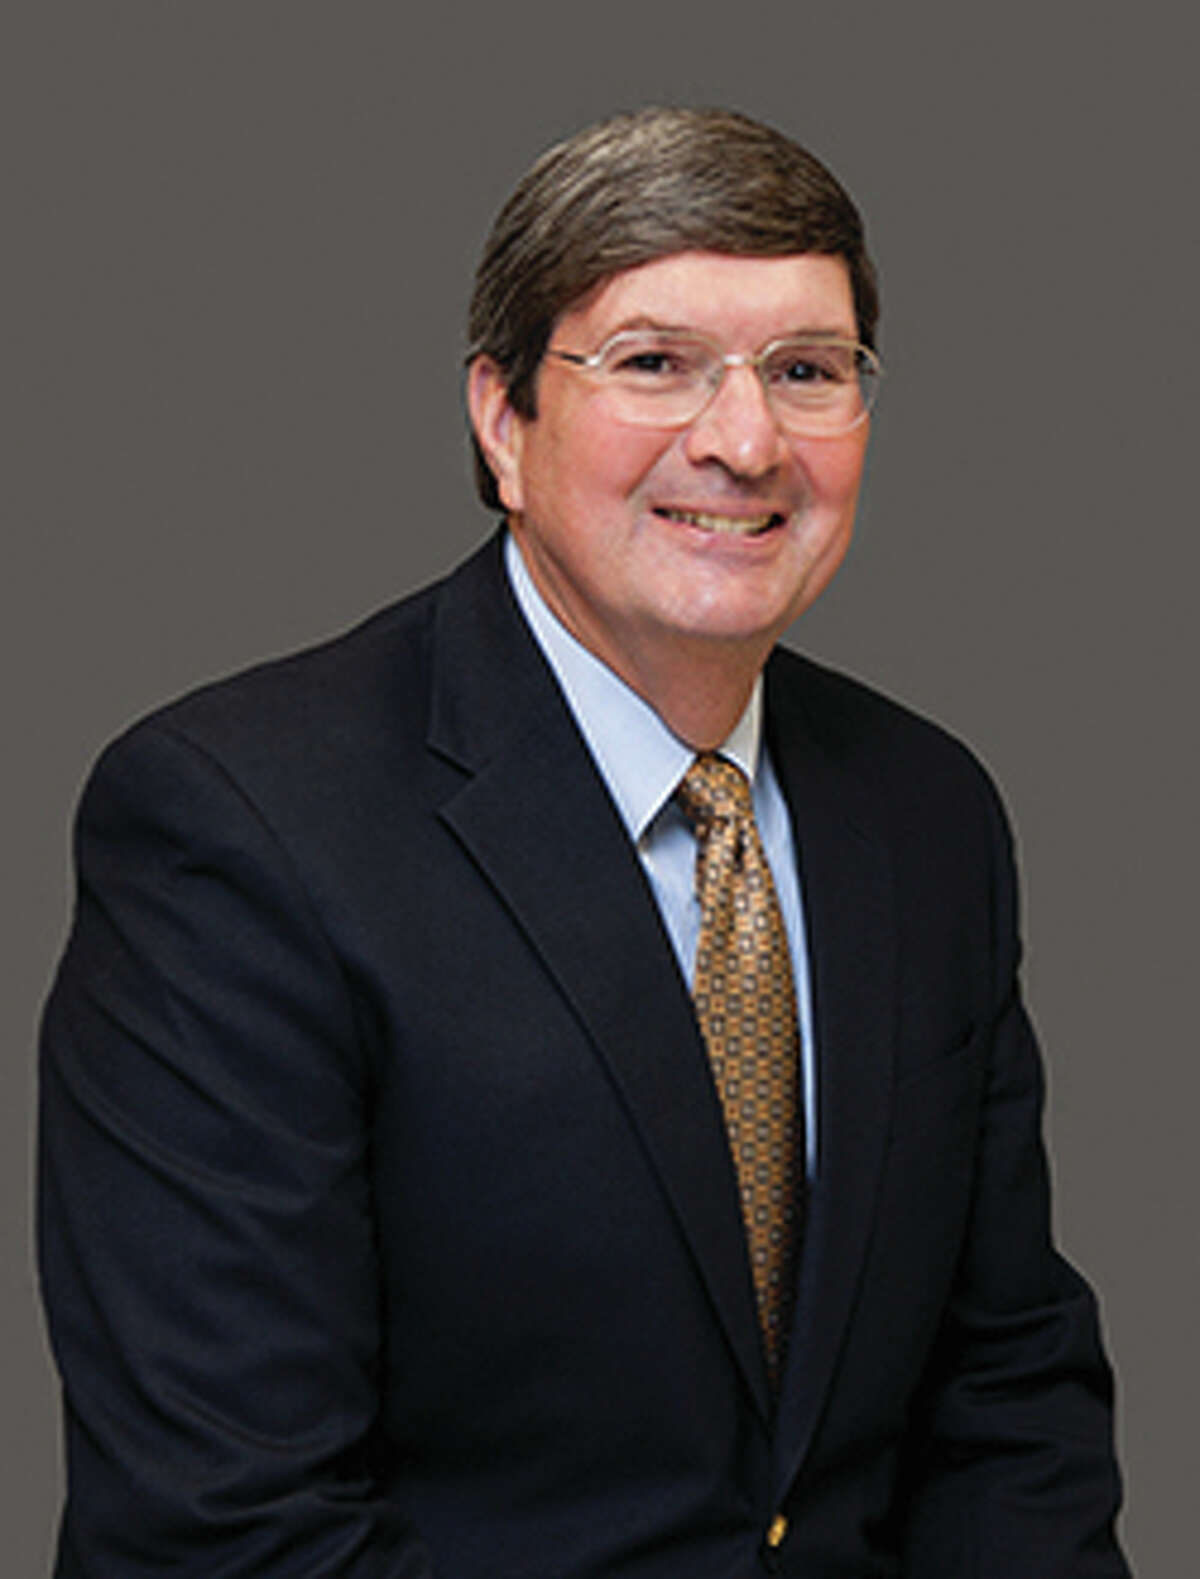 Jim Hrusovsky, CEO Alton Steel, Inc.